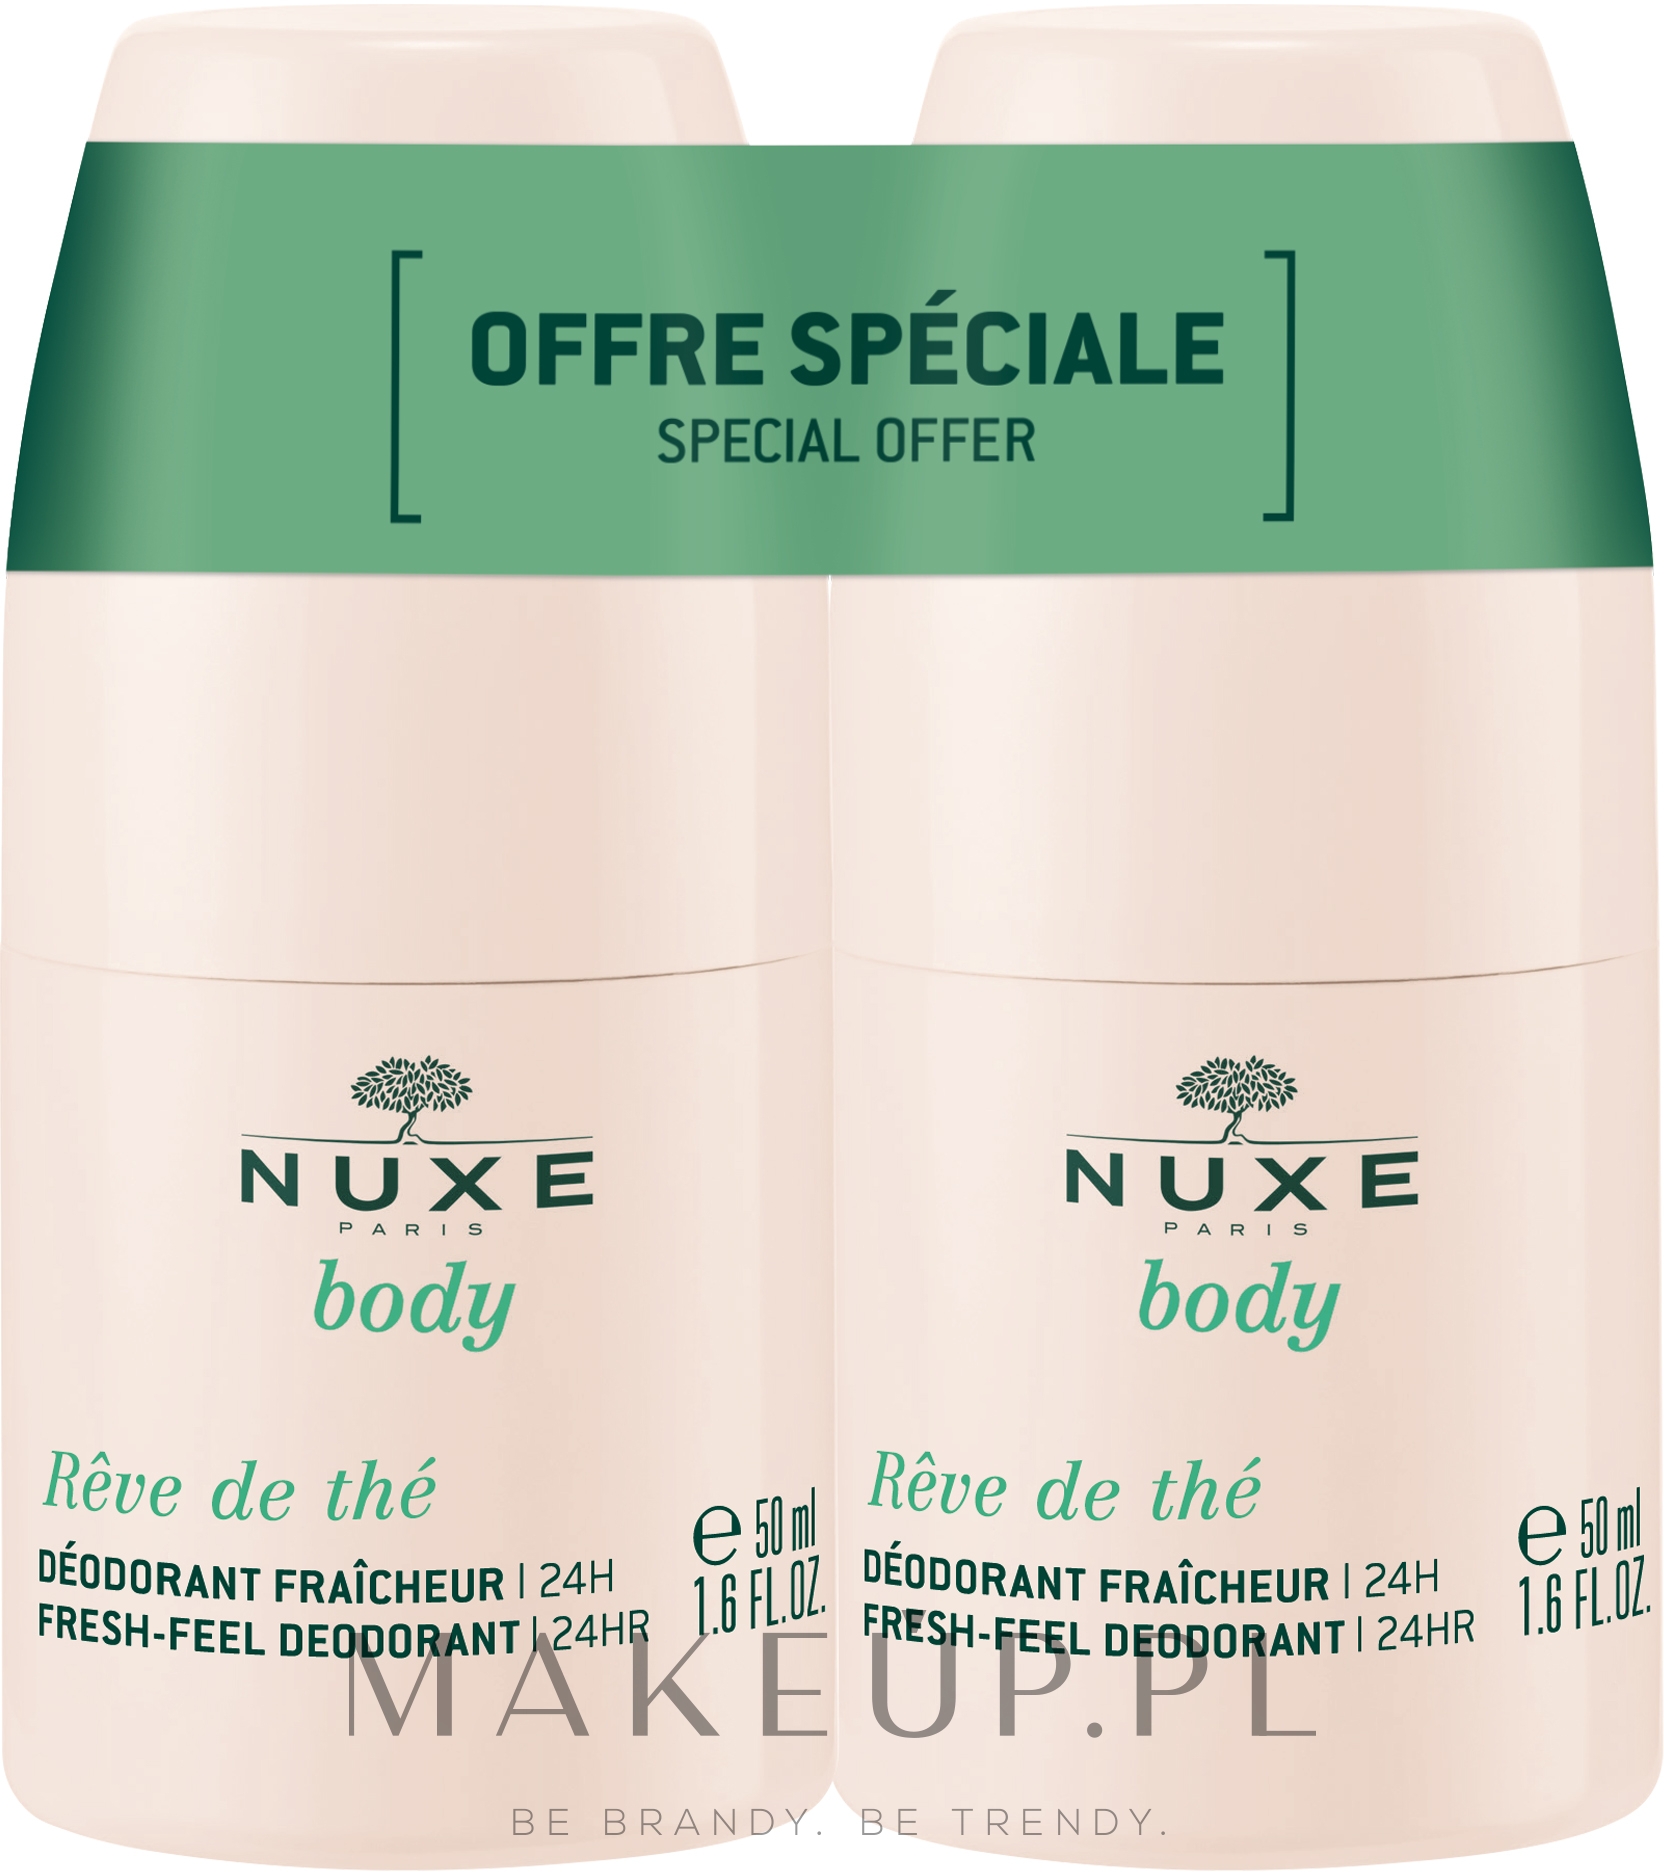 Odświeżający dezodorant w kulce - Nuxe Body Fresh-Feel Deodorant 24H — Zdjęcie 2 x 50 ml